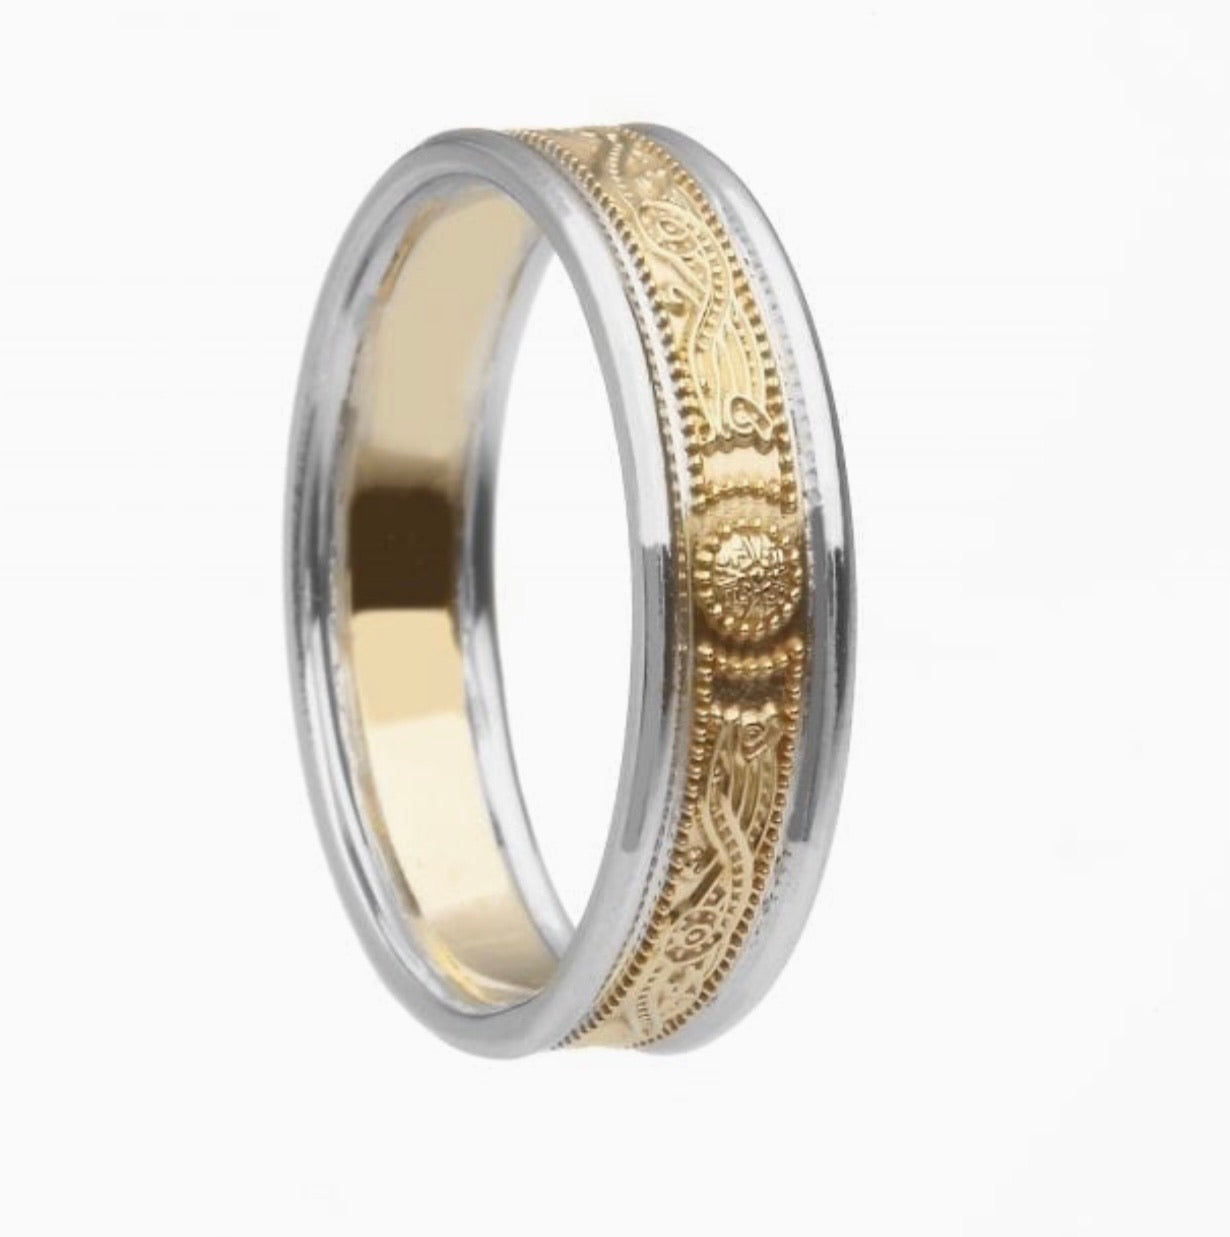 5.1mm Court Shaped Celtic Warrior Design Wedding Ring